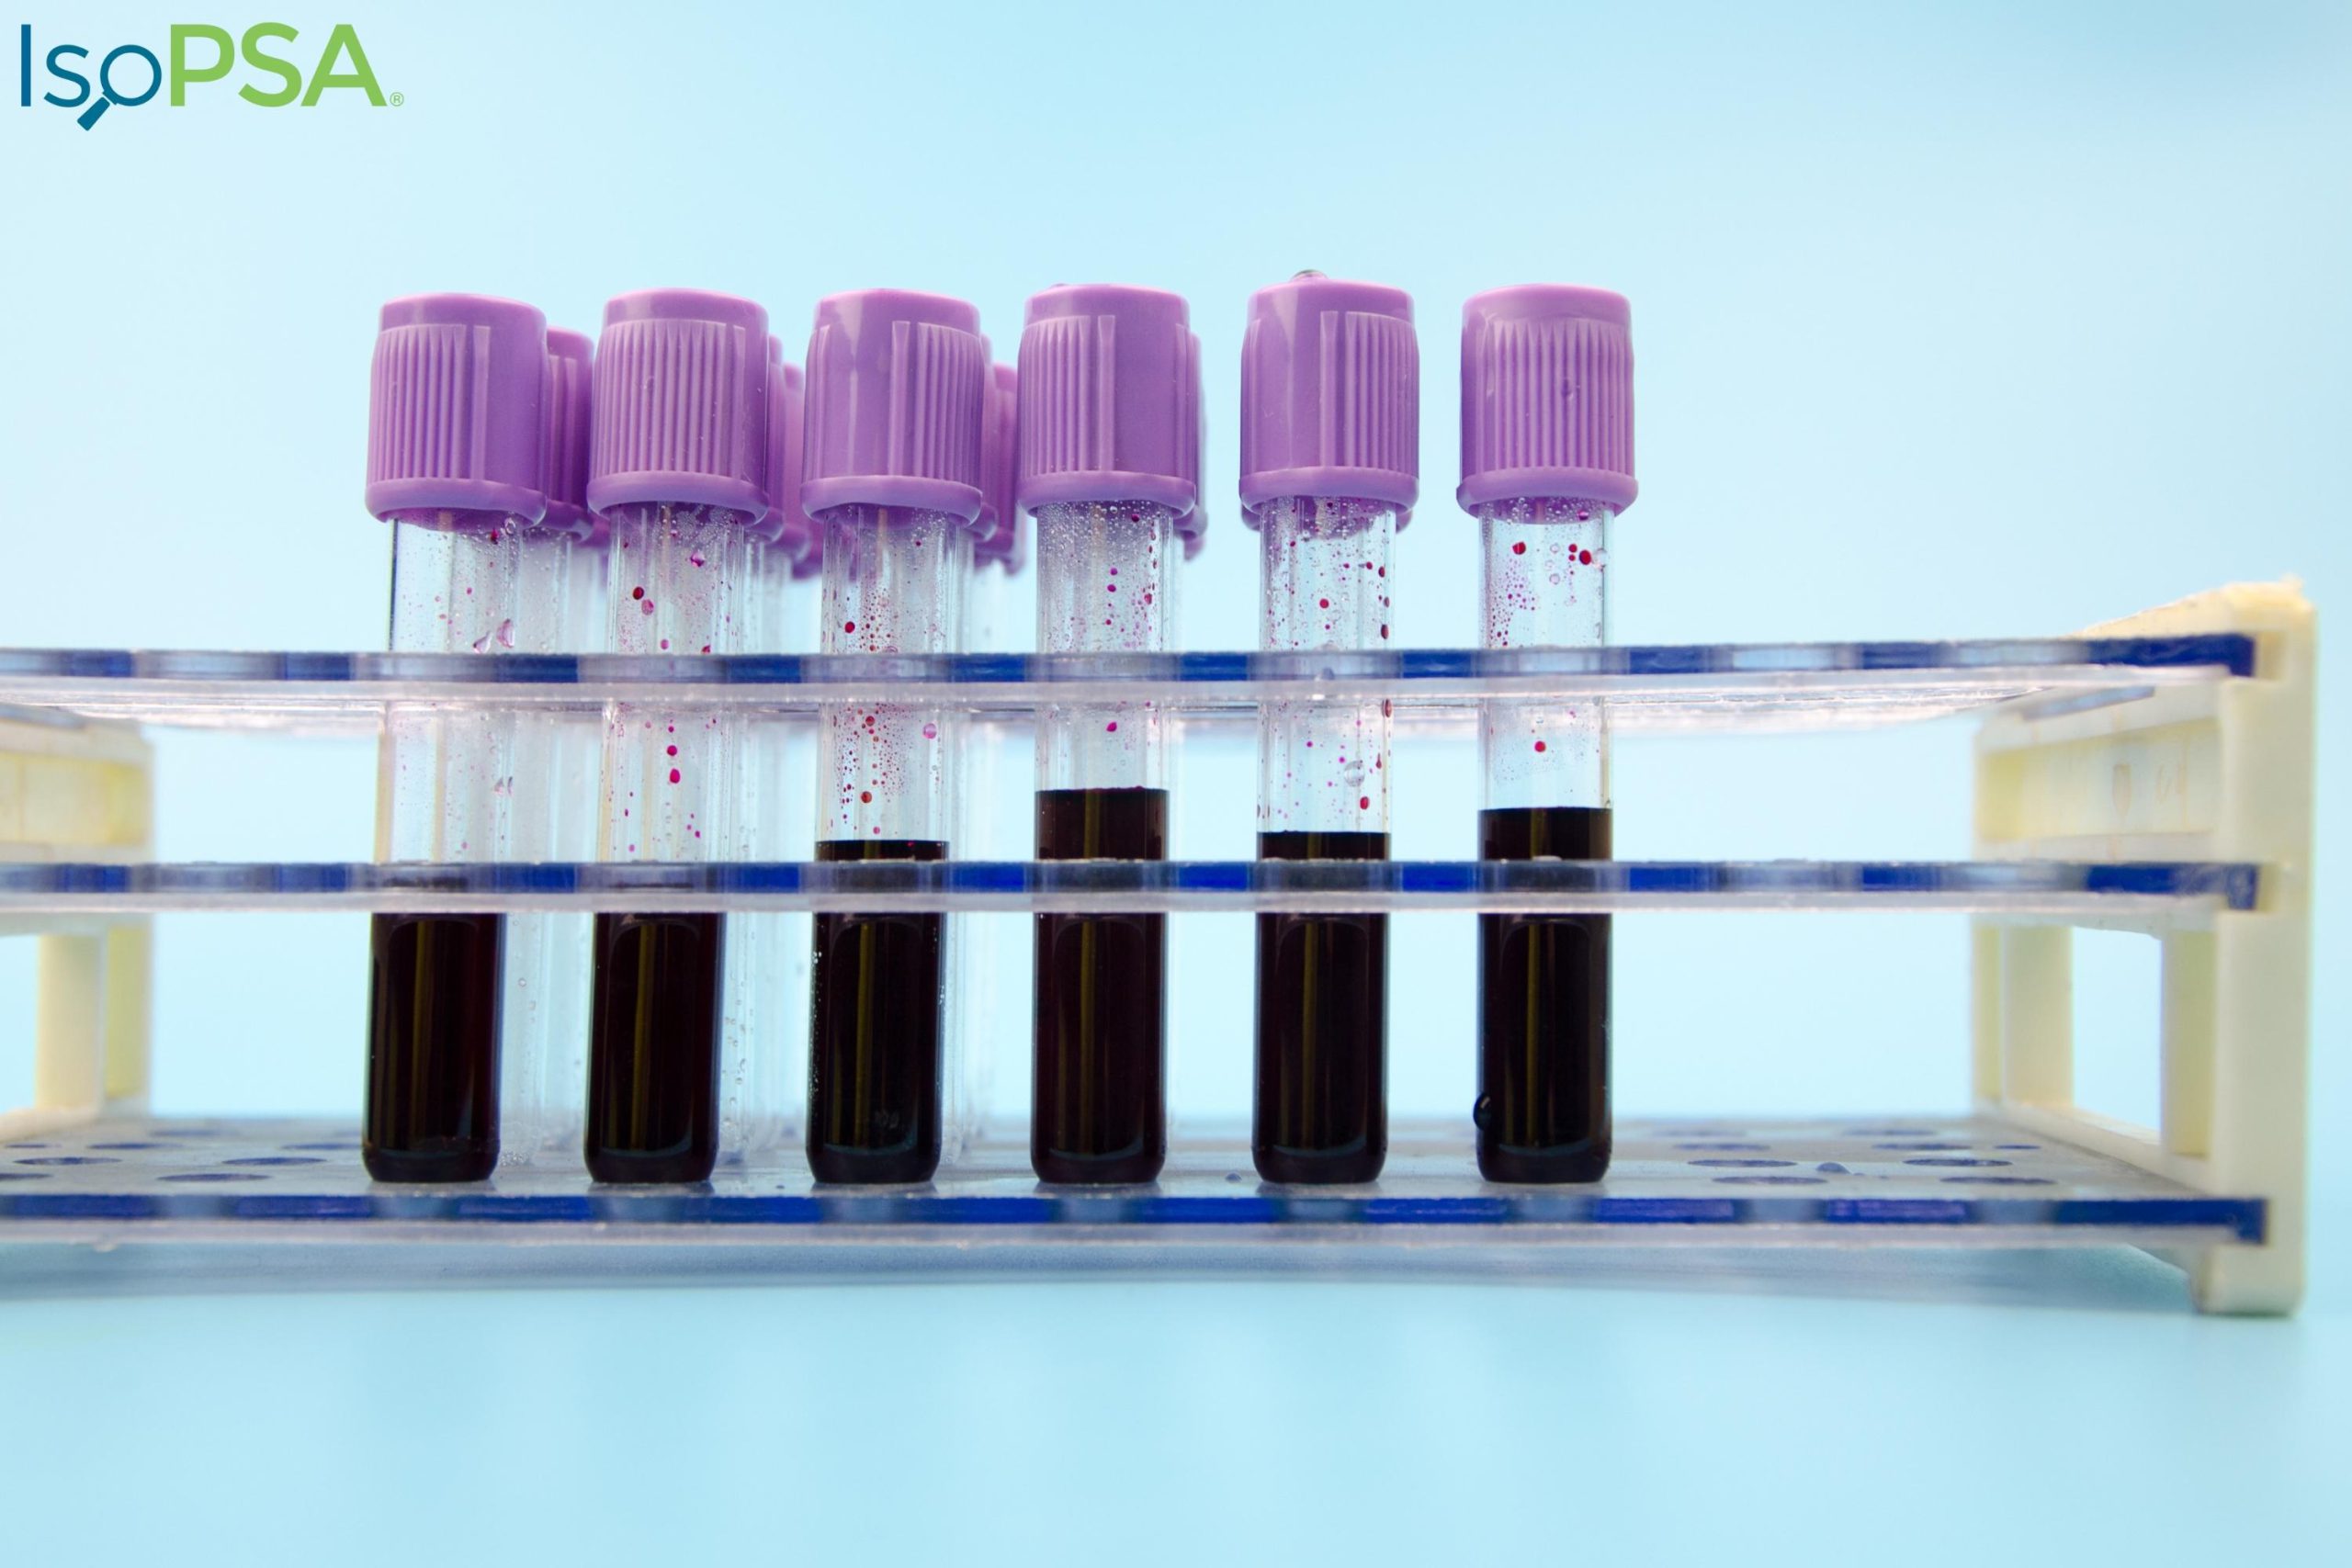 משרד הבריאות אישר בדיקת דם חדשה לאבחון סרטן הערמונית